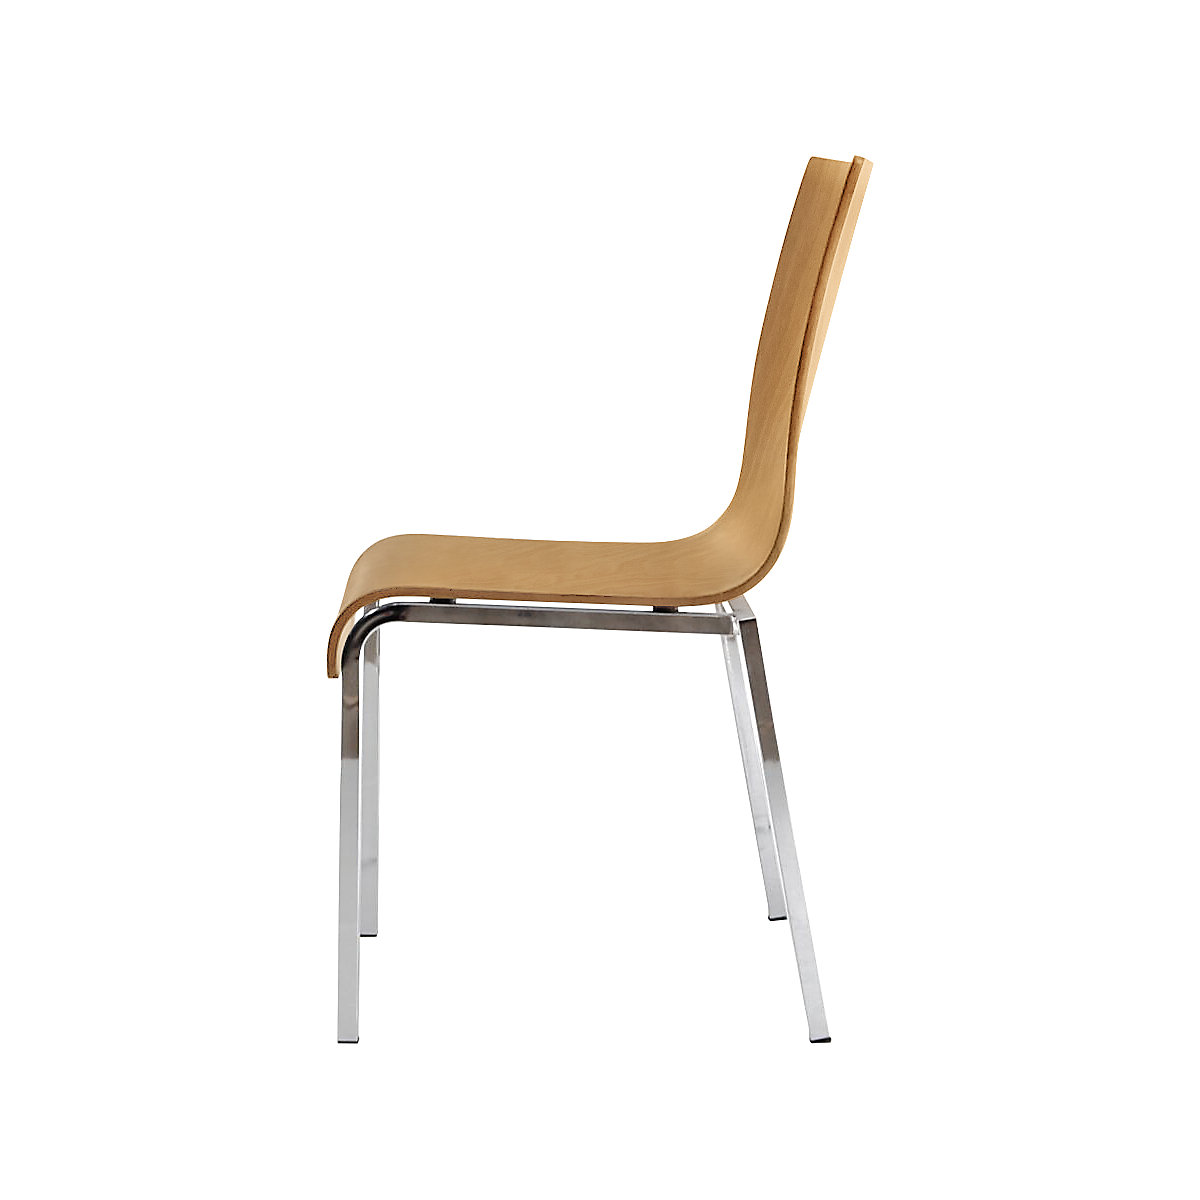 Dřevěná skořepinová židle CUBIC, v x š x h 860 x 450 x 520 mm, bal.j. 4 ks, skořepina sedáku přírodní buk